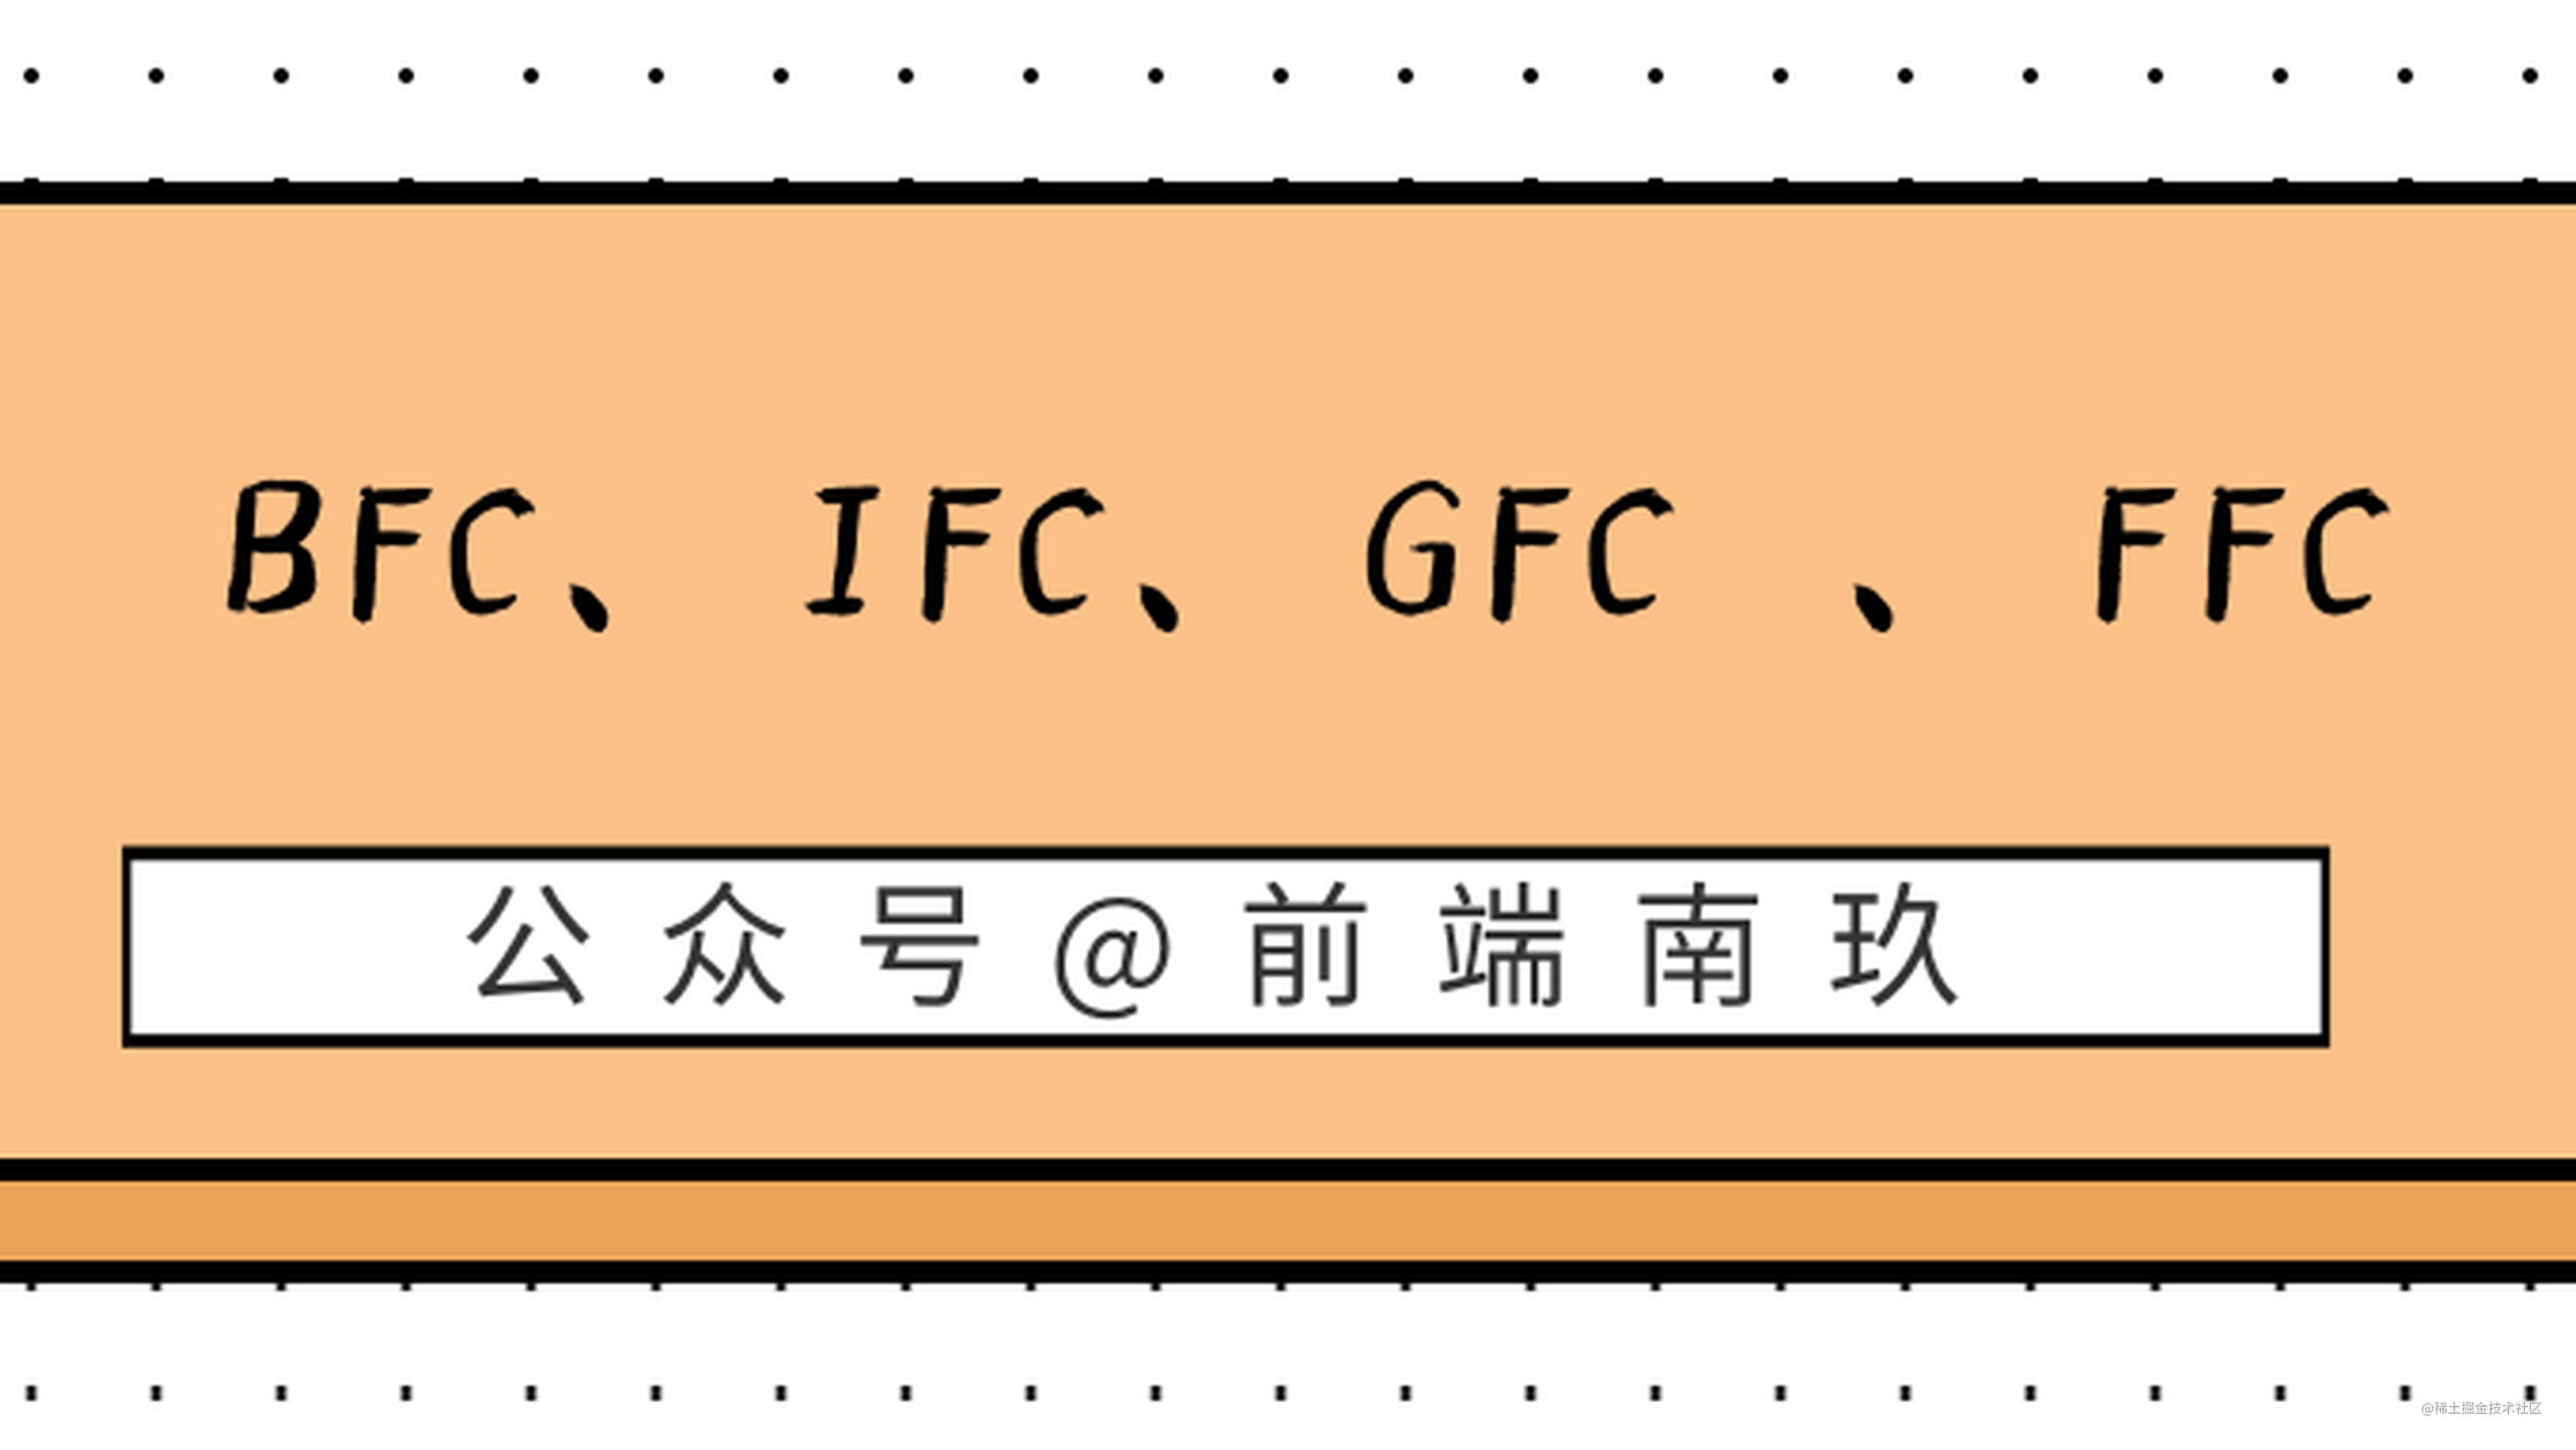 前端人员不要只知道KFC，你应该了解 BFC、IFC、GFC 和 FFC